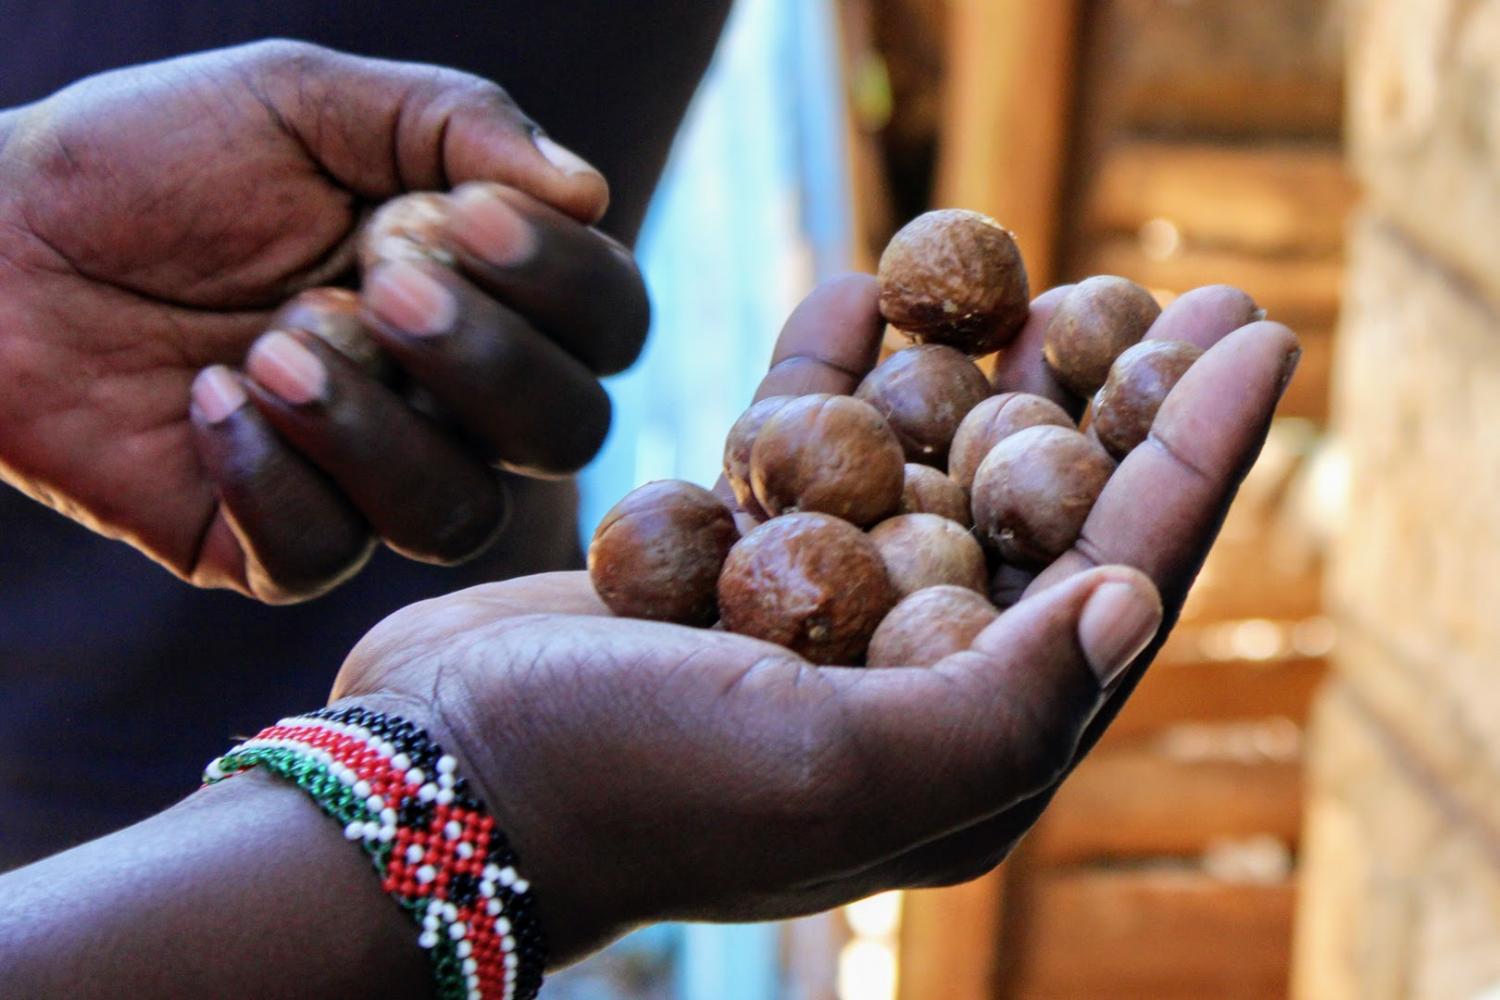 Visitemos Kenia, donde las nueces de macadamia se cultivan para ti con cuidado y en armonía con la naturaleza y sus habitantes.